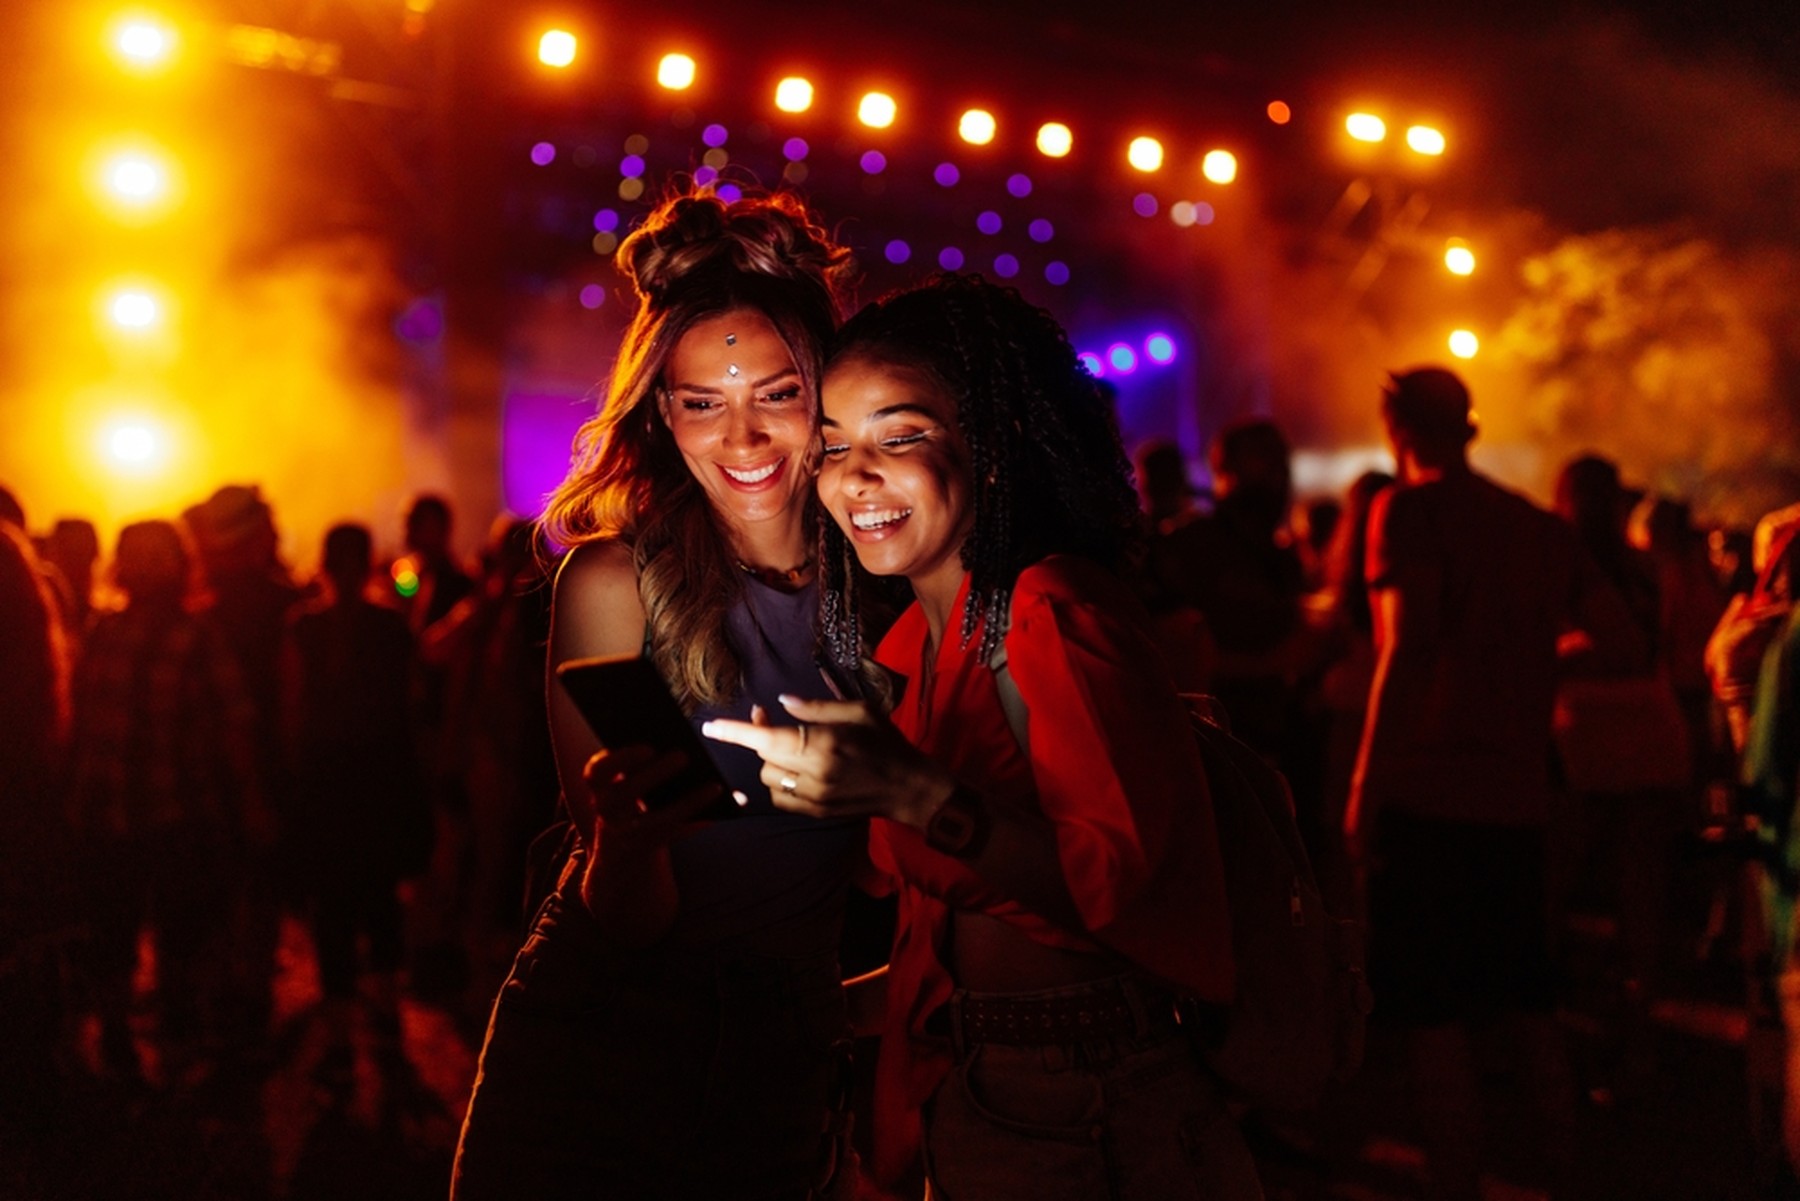 Dos chicas jóvenes mirando un smartphone en un festival. De fondo se ven las luces del escenario. Ellas llevan maquillaje festivo.